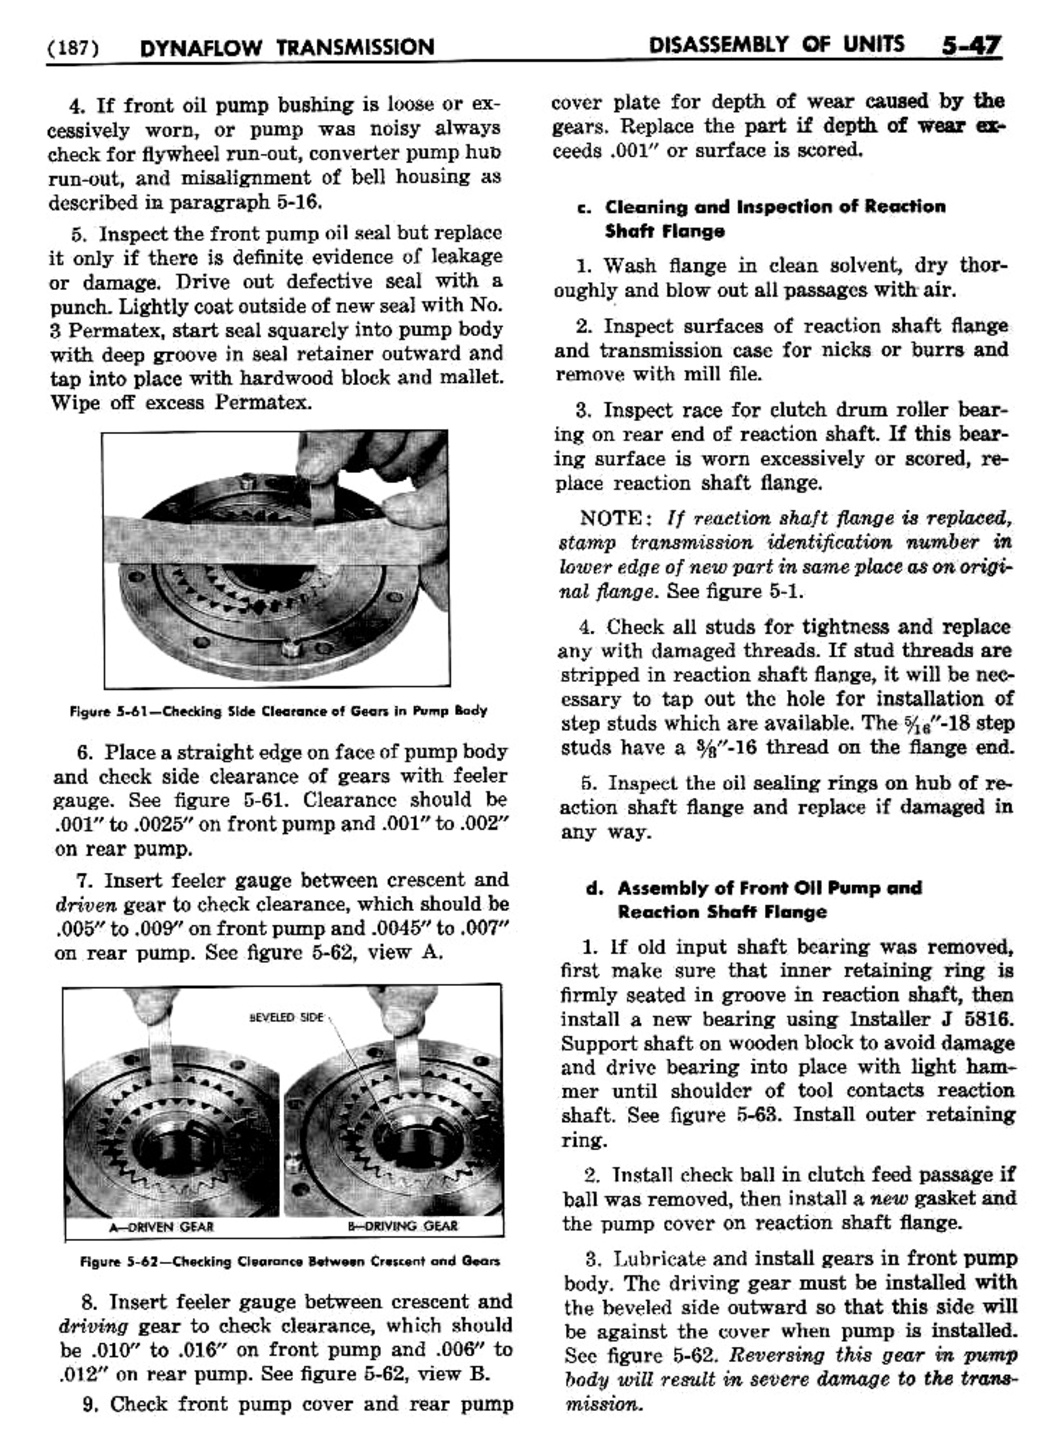 n_06 1955 Buick Shop Manual - Dynaflow-047-047.jpg